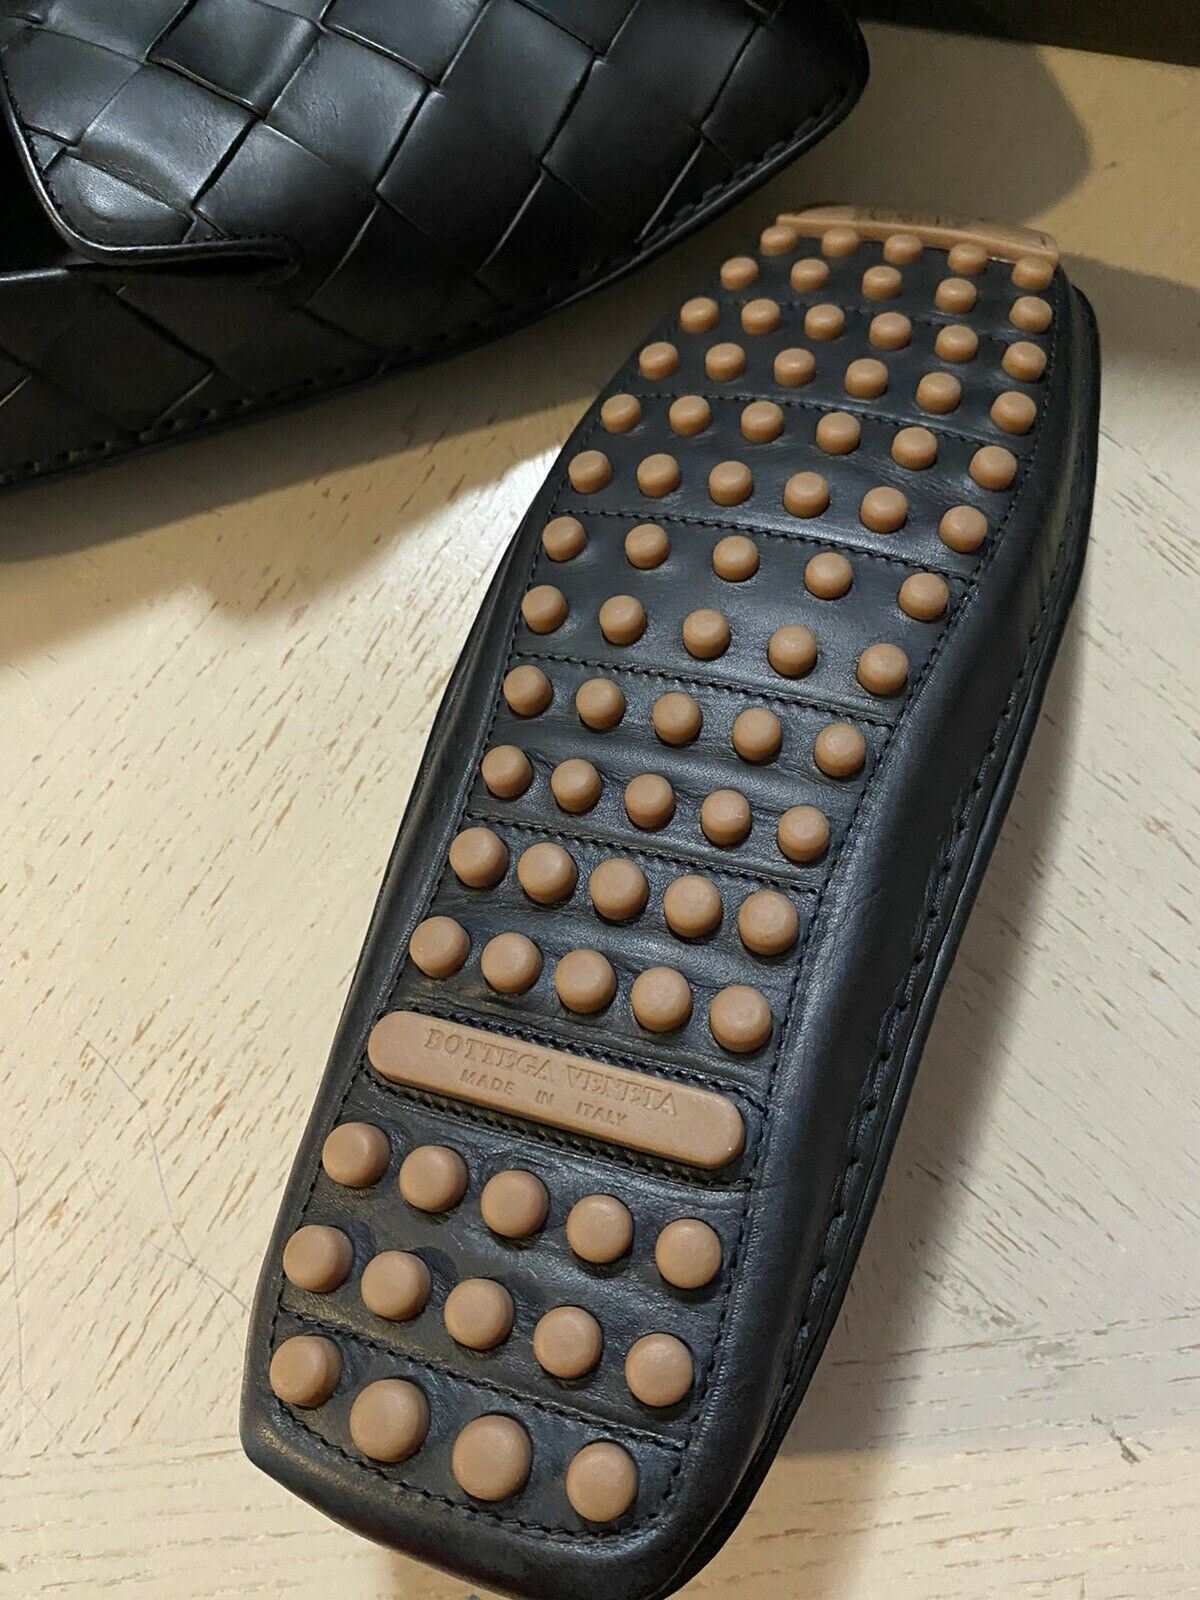 NIB $740 Bottega Veneta Men Leather Moccasin Driver Shoes Black 8 US/41 Eu